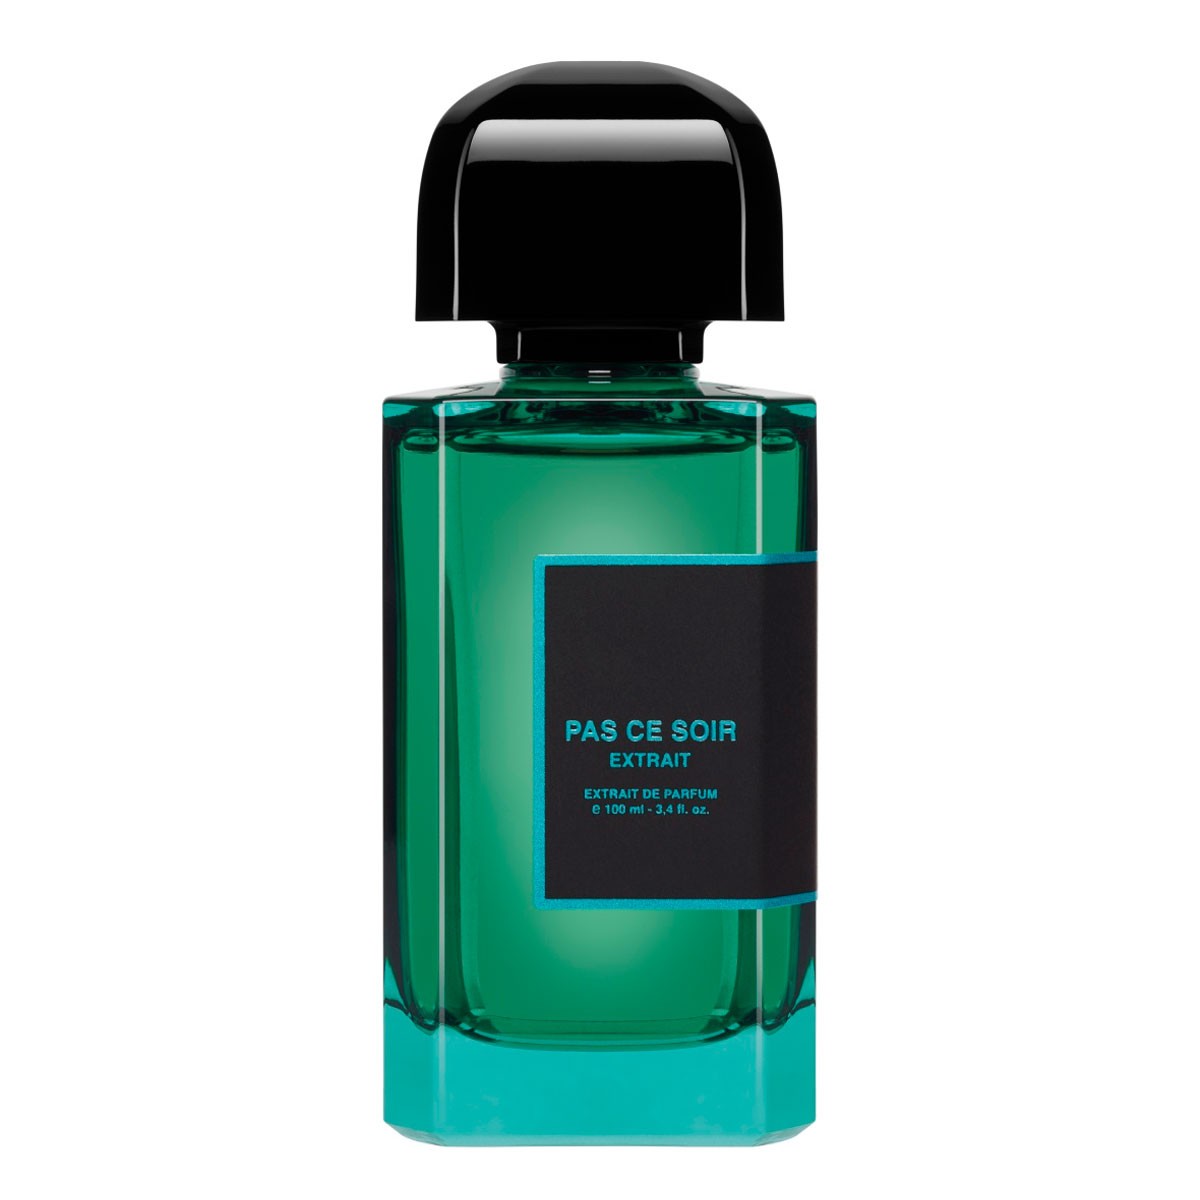 Descubre el extracto de perfume nicho Pas Ce Soir de BDK Parfums. En exclusiva en jcApotecari.